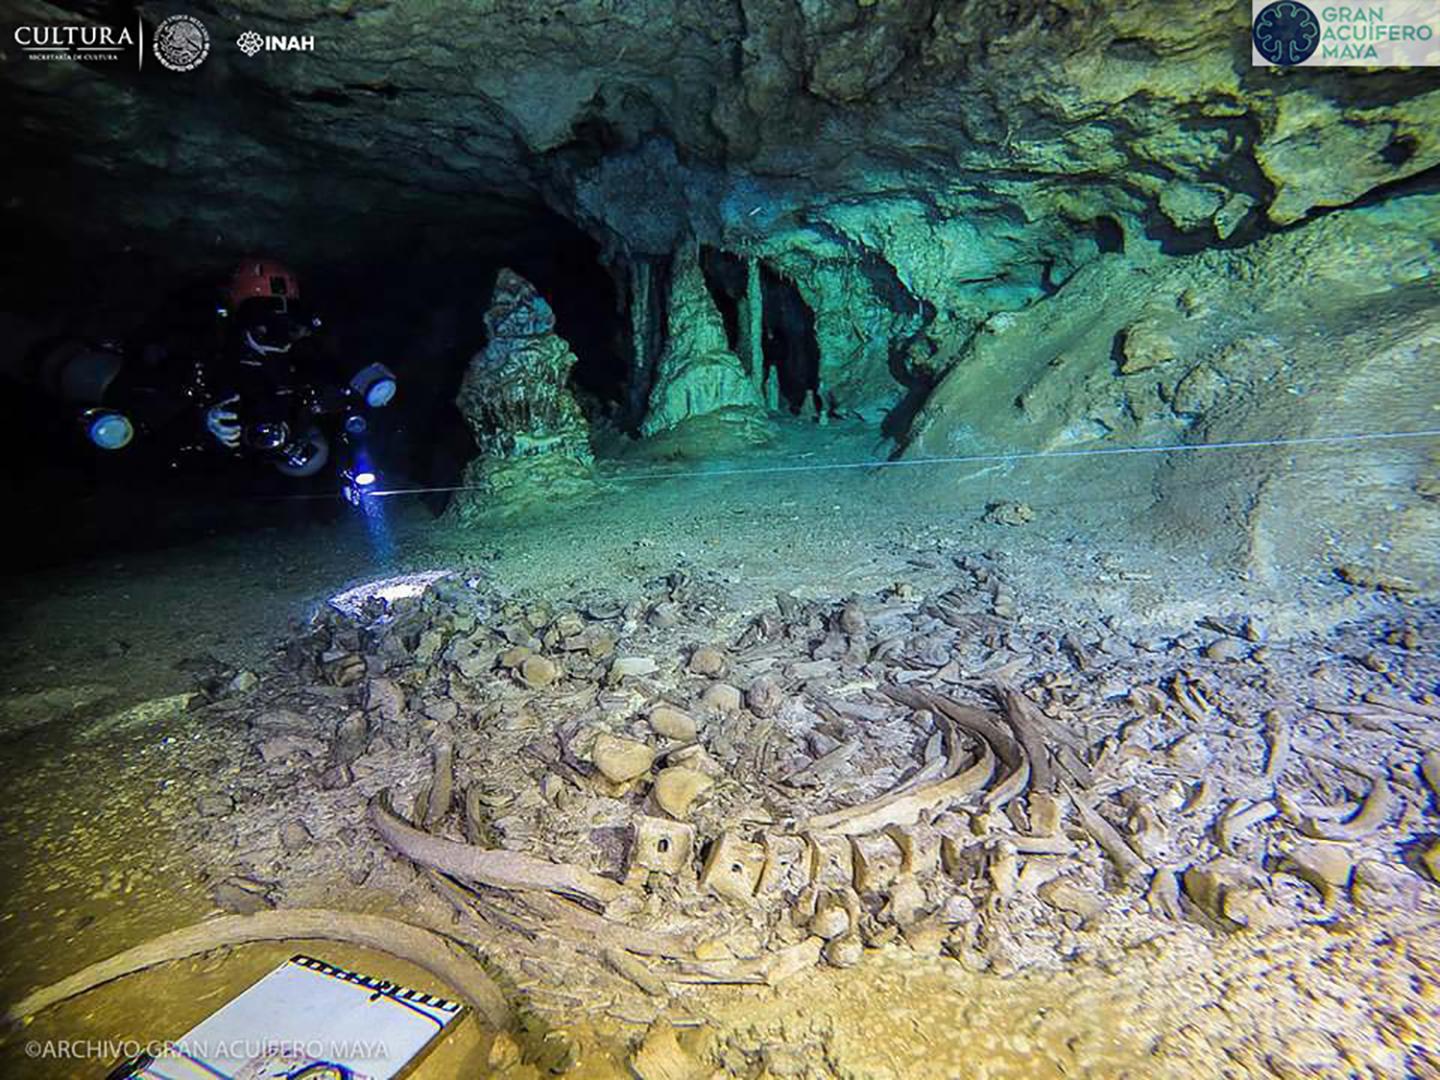 En explorant ces grottes à l'aide d'équipements de plongée, les chercheurs ont découvert différents ossements et objets